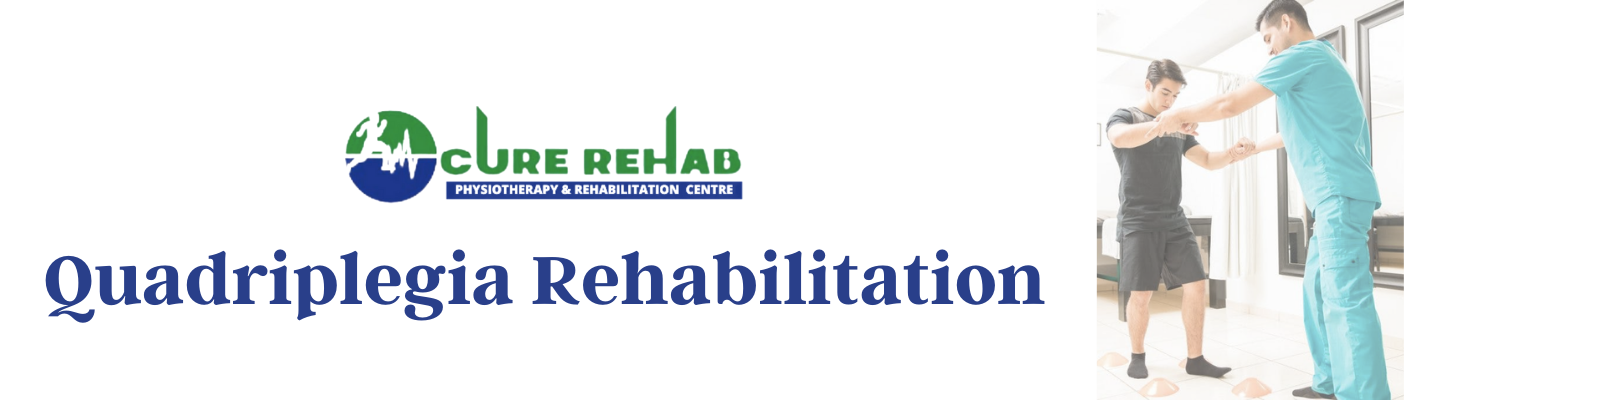 Quadriplegia Rehabilitation